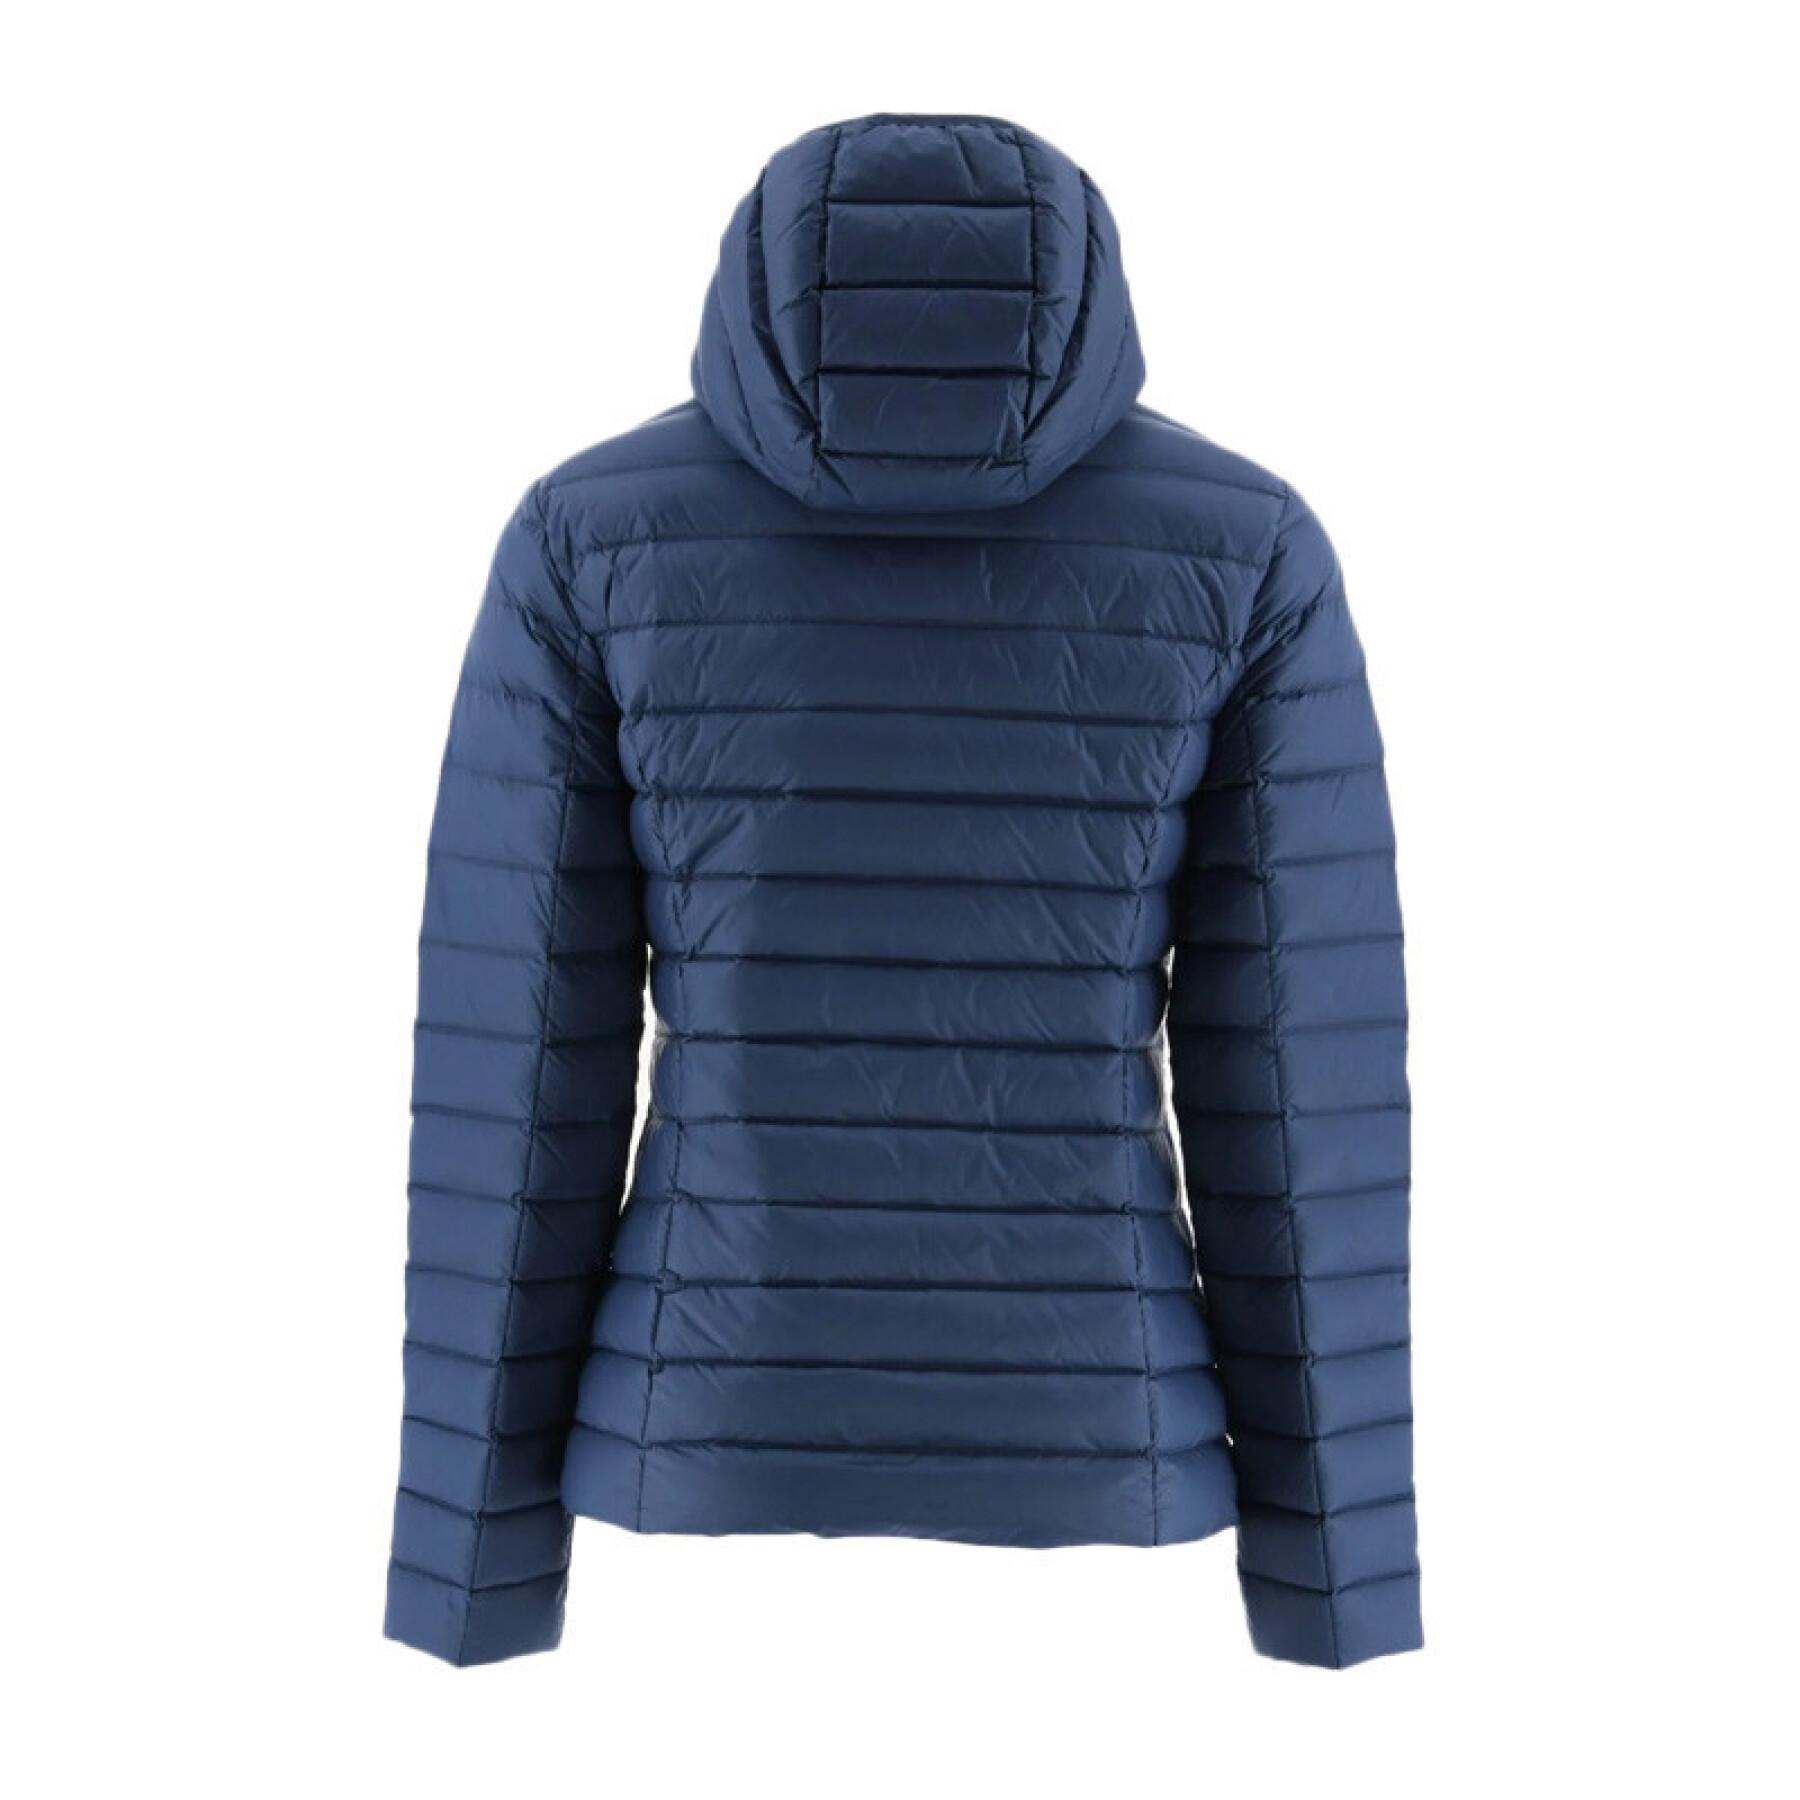 Women's hooded wool jacket JOTT Cloe